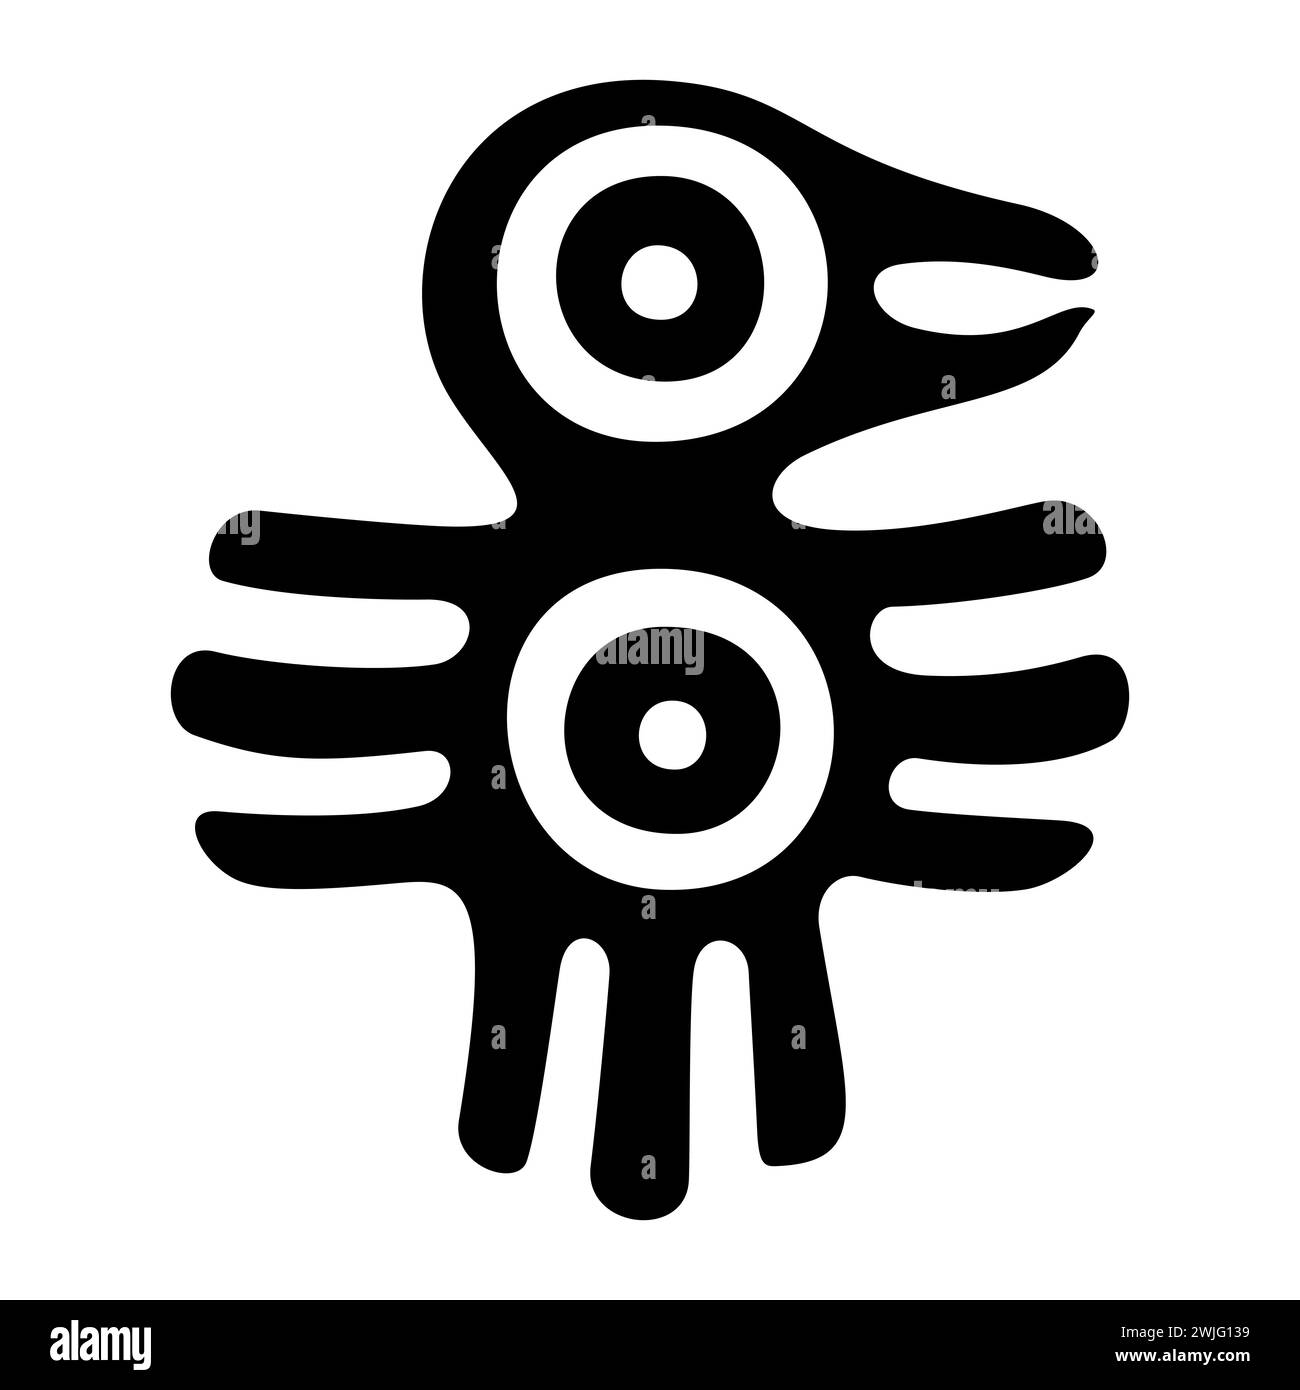 Fantastico uccello simbolo dell'antico Messico. Motivo decorativo azteco a francobollo piatto, che mostra un uccello, come è stato trovato in Tenochtitlan precolombiano. Foto Stock